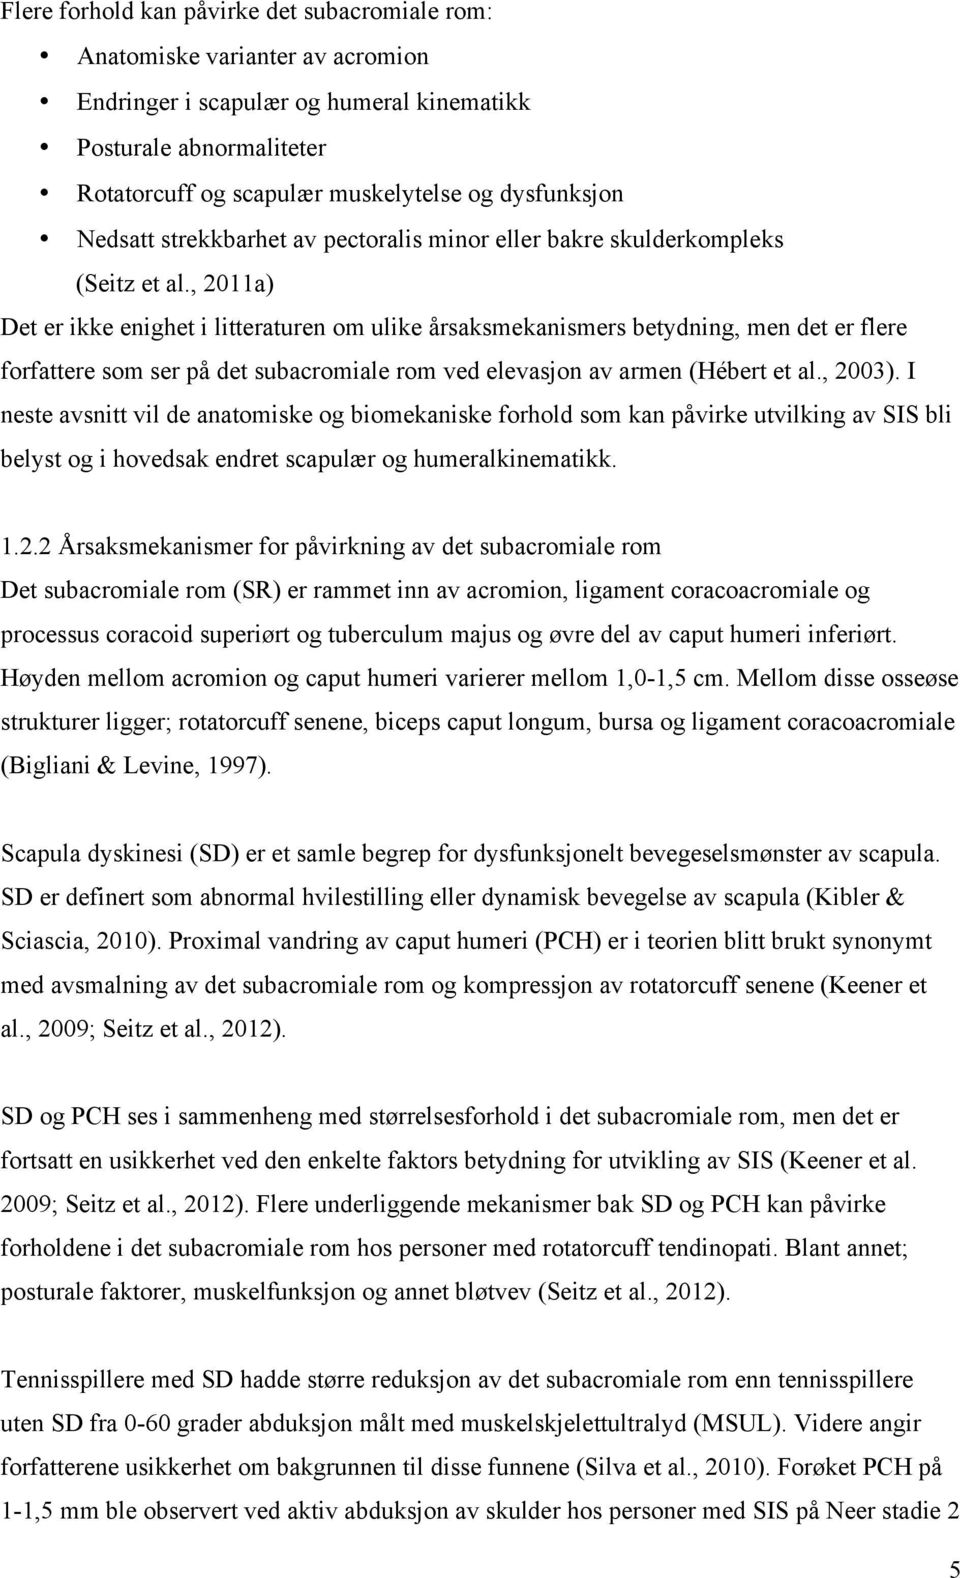 , 2011a) Det er ikke enighet i litteraturen om ulike årsaksmekanismers betydning, men det er flere forfattere som ser på det subacromiale rom ved elevasjon av armen (Hébert et al., 2003).